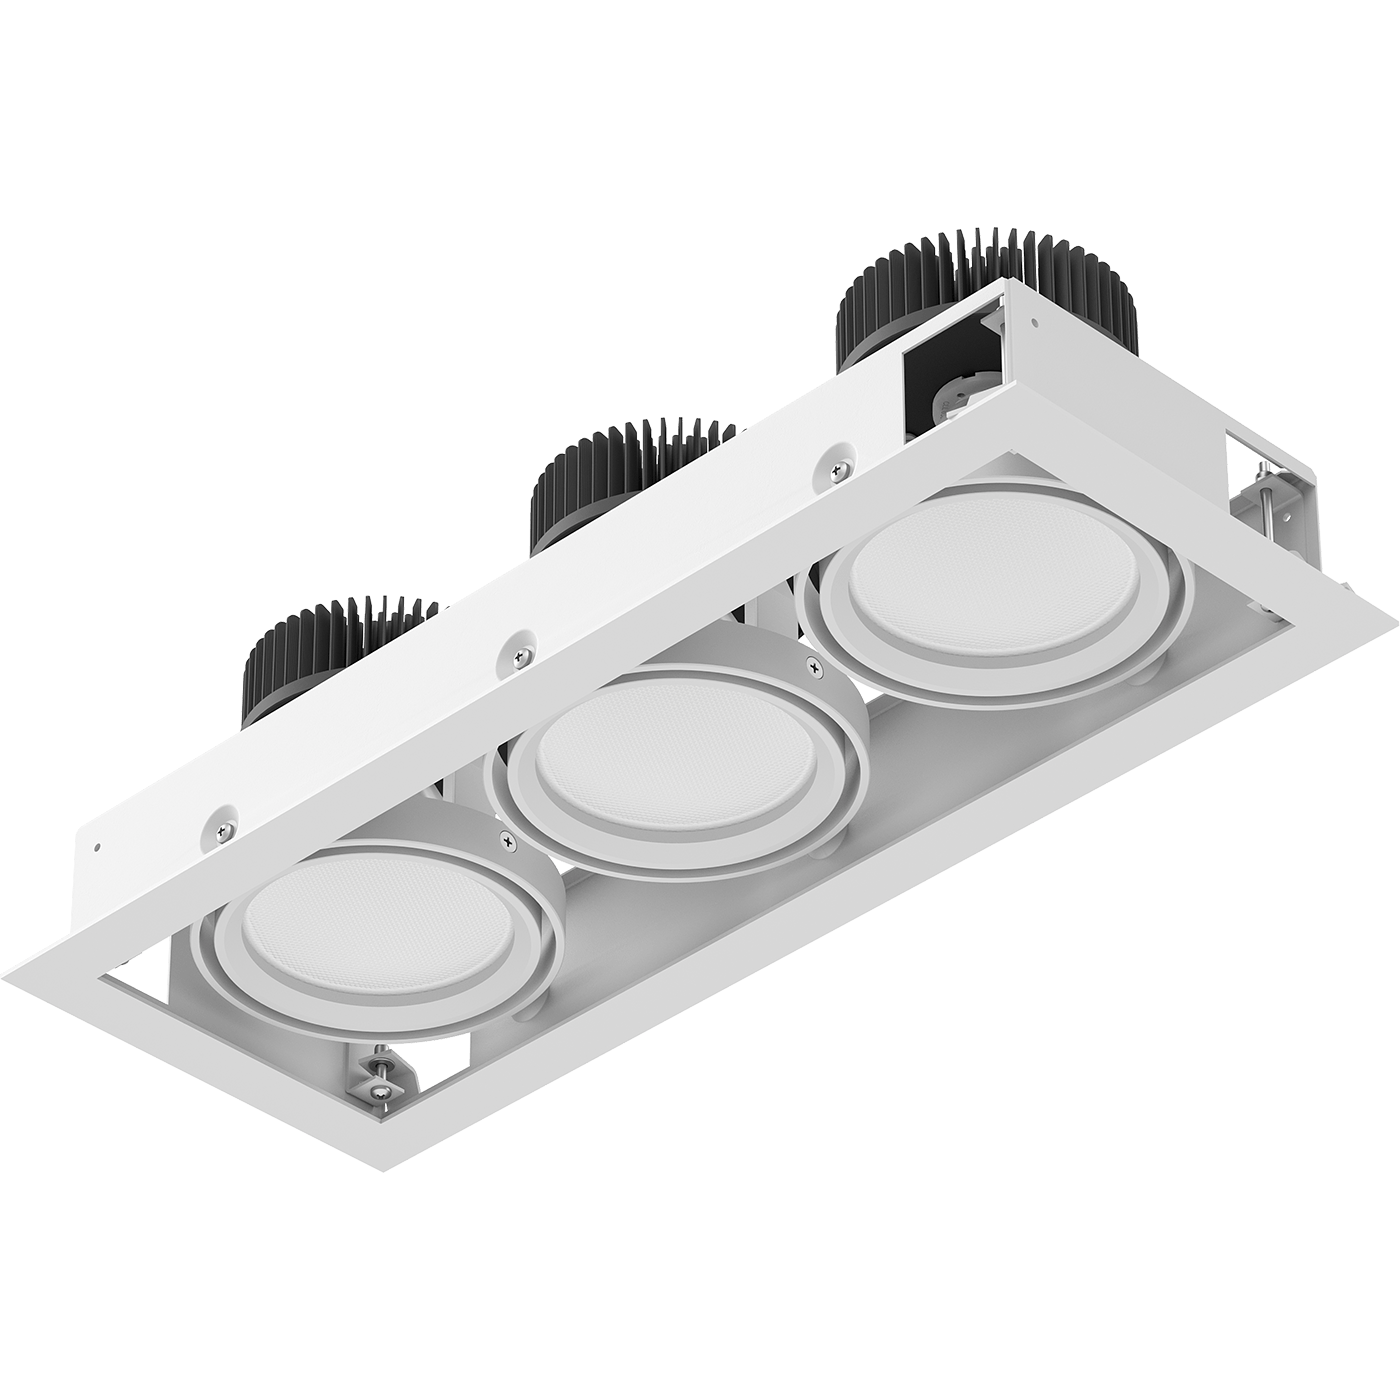 акцентирующие светильники и трековые системы SNS LED 3M 3x35 W D45 4000K new, артикул 1159000340